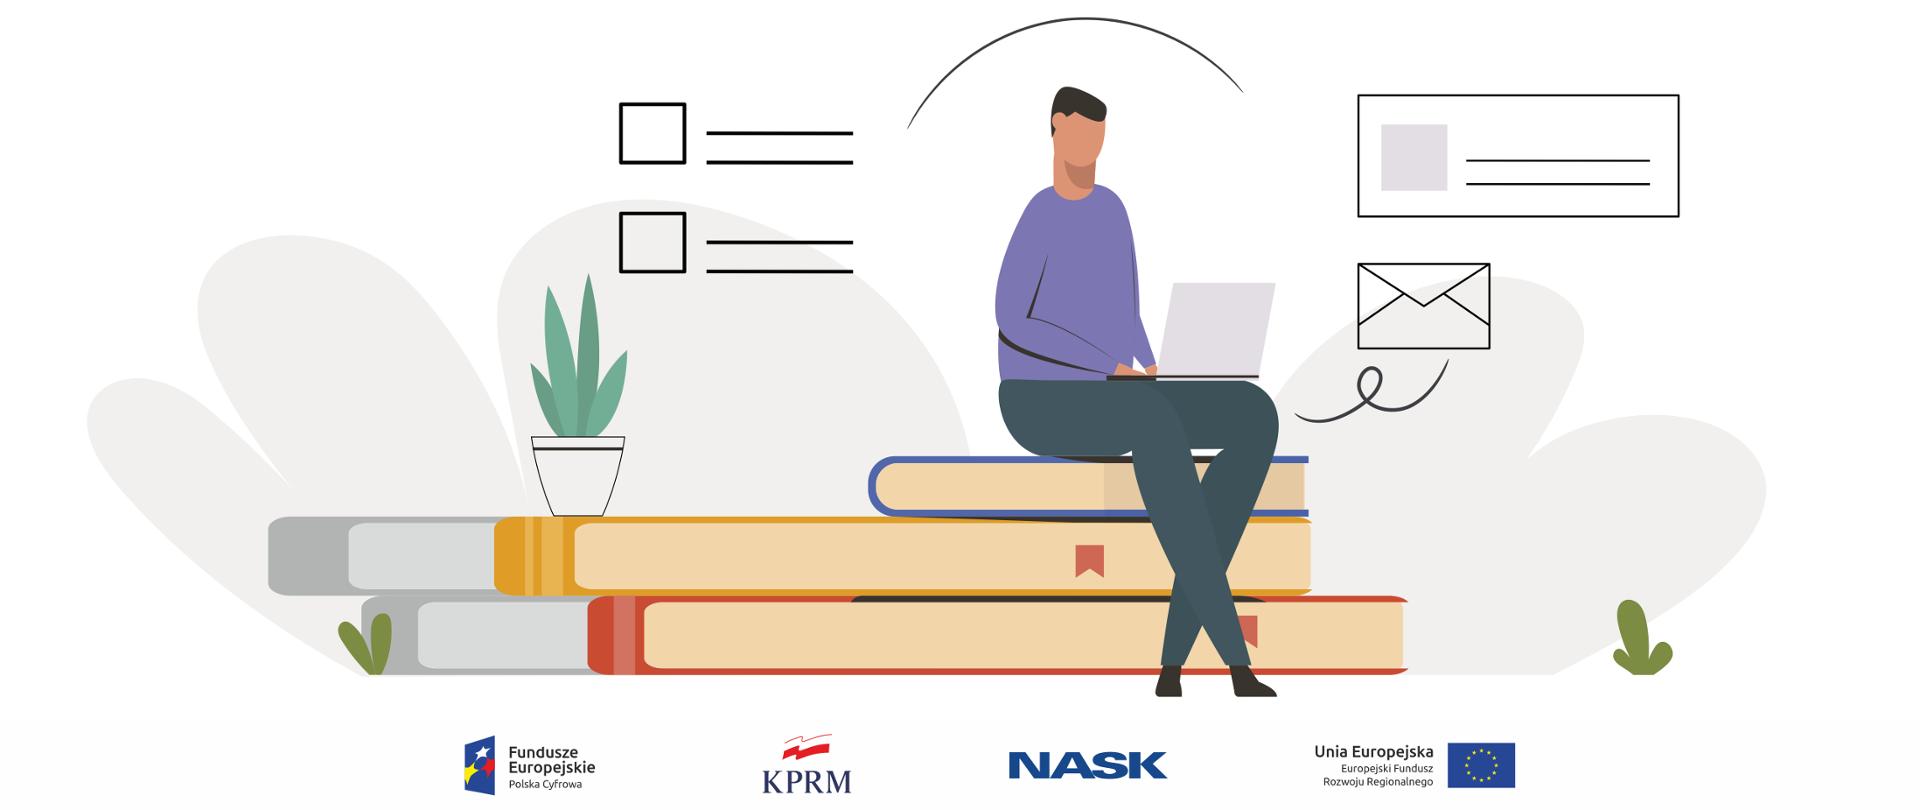 Grafika wektorowa - mężczyzna siedzi na książkach, na kolanach trzyma laptopa, z którego korzysta. Wokół niego ikony kojarzące się z internetem: koperta, wiadomości.